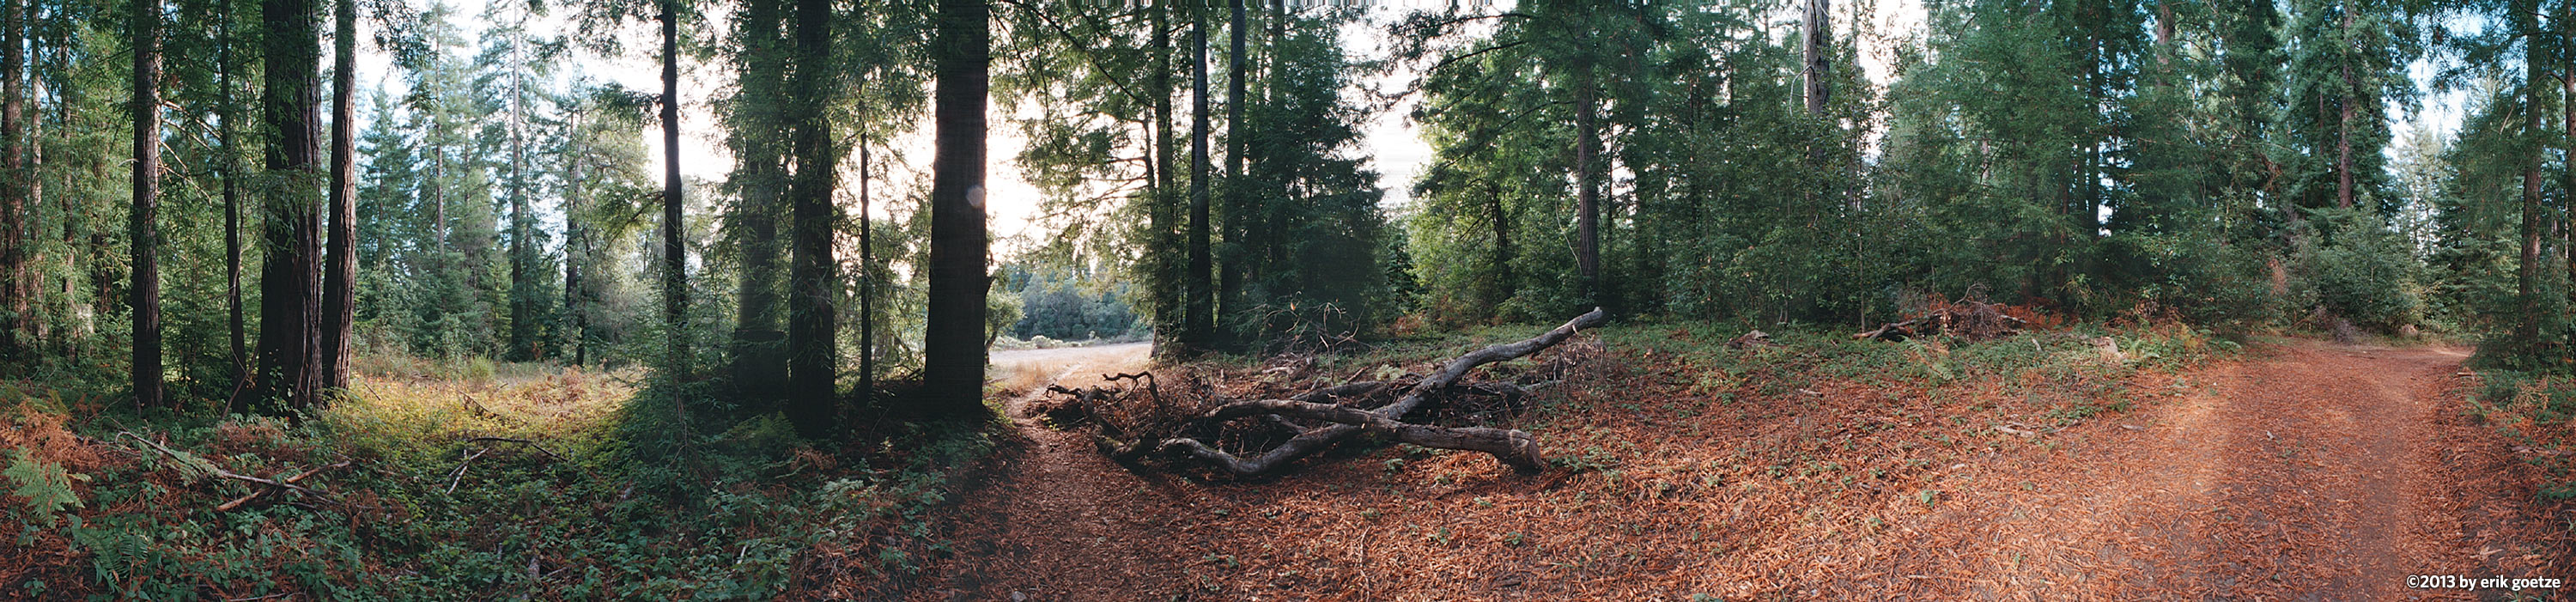 Redwoods in Wilder Ranch, California